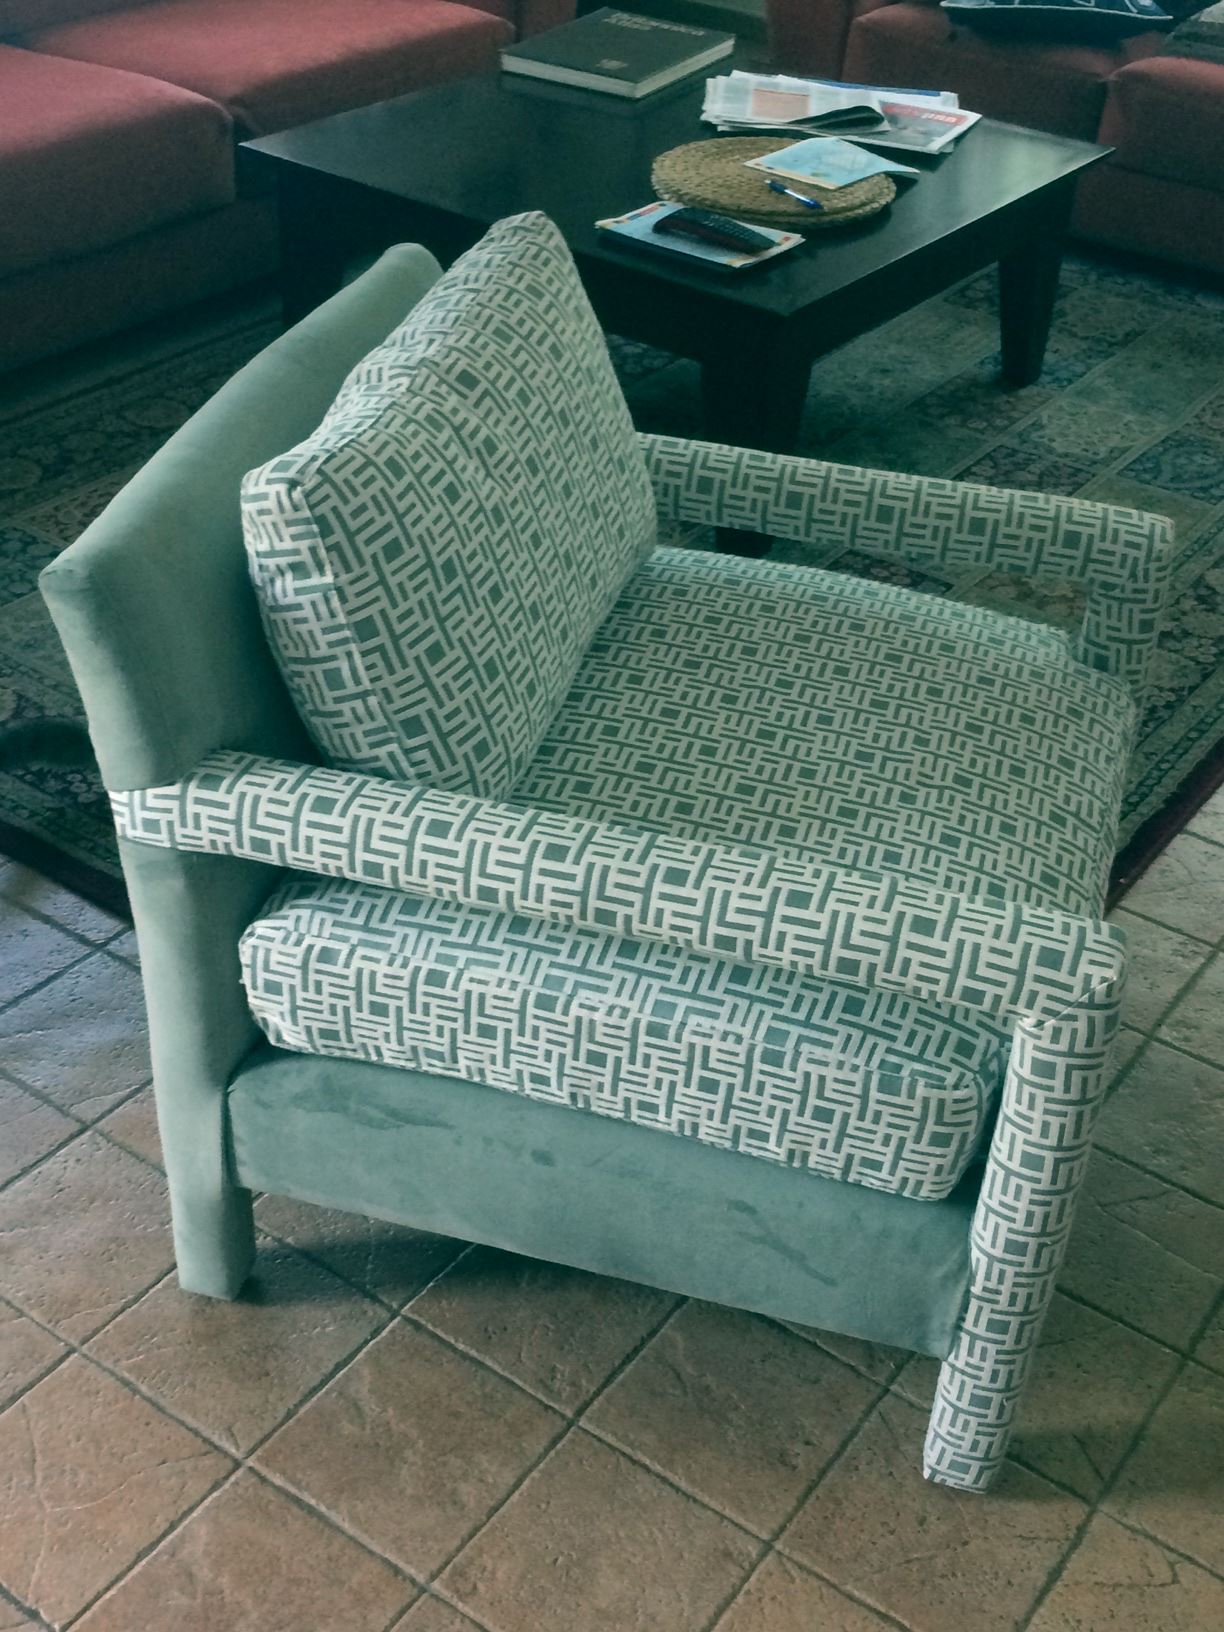 כורסא המשלבת בד בדוגמא גאומטרית עם בד חלק באותו צבע